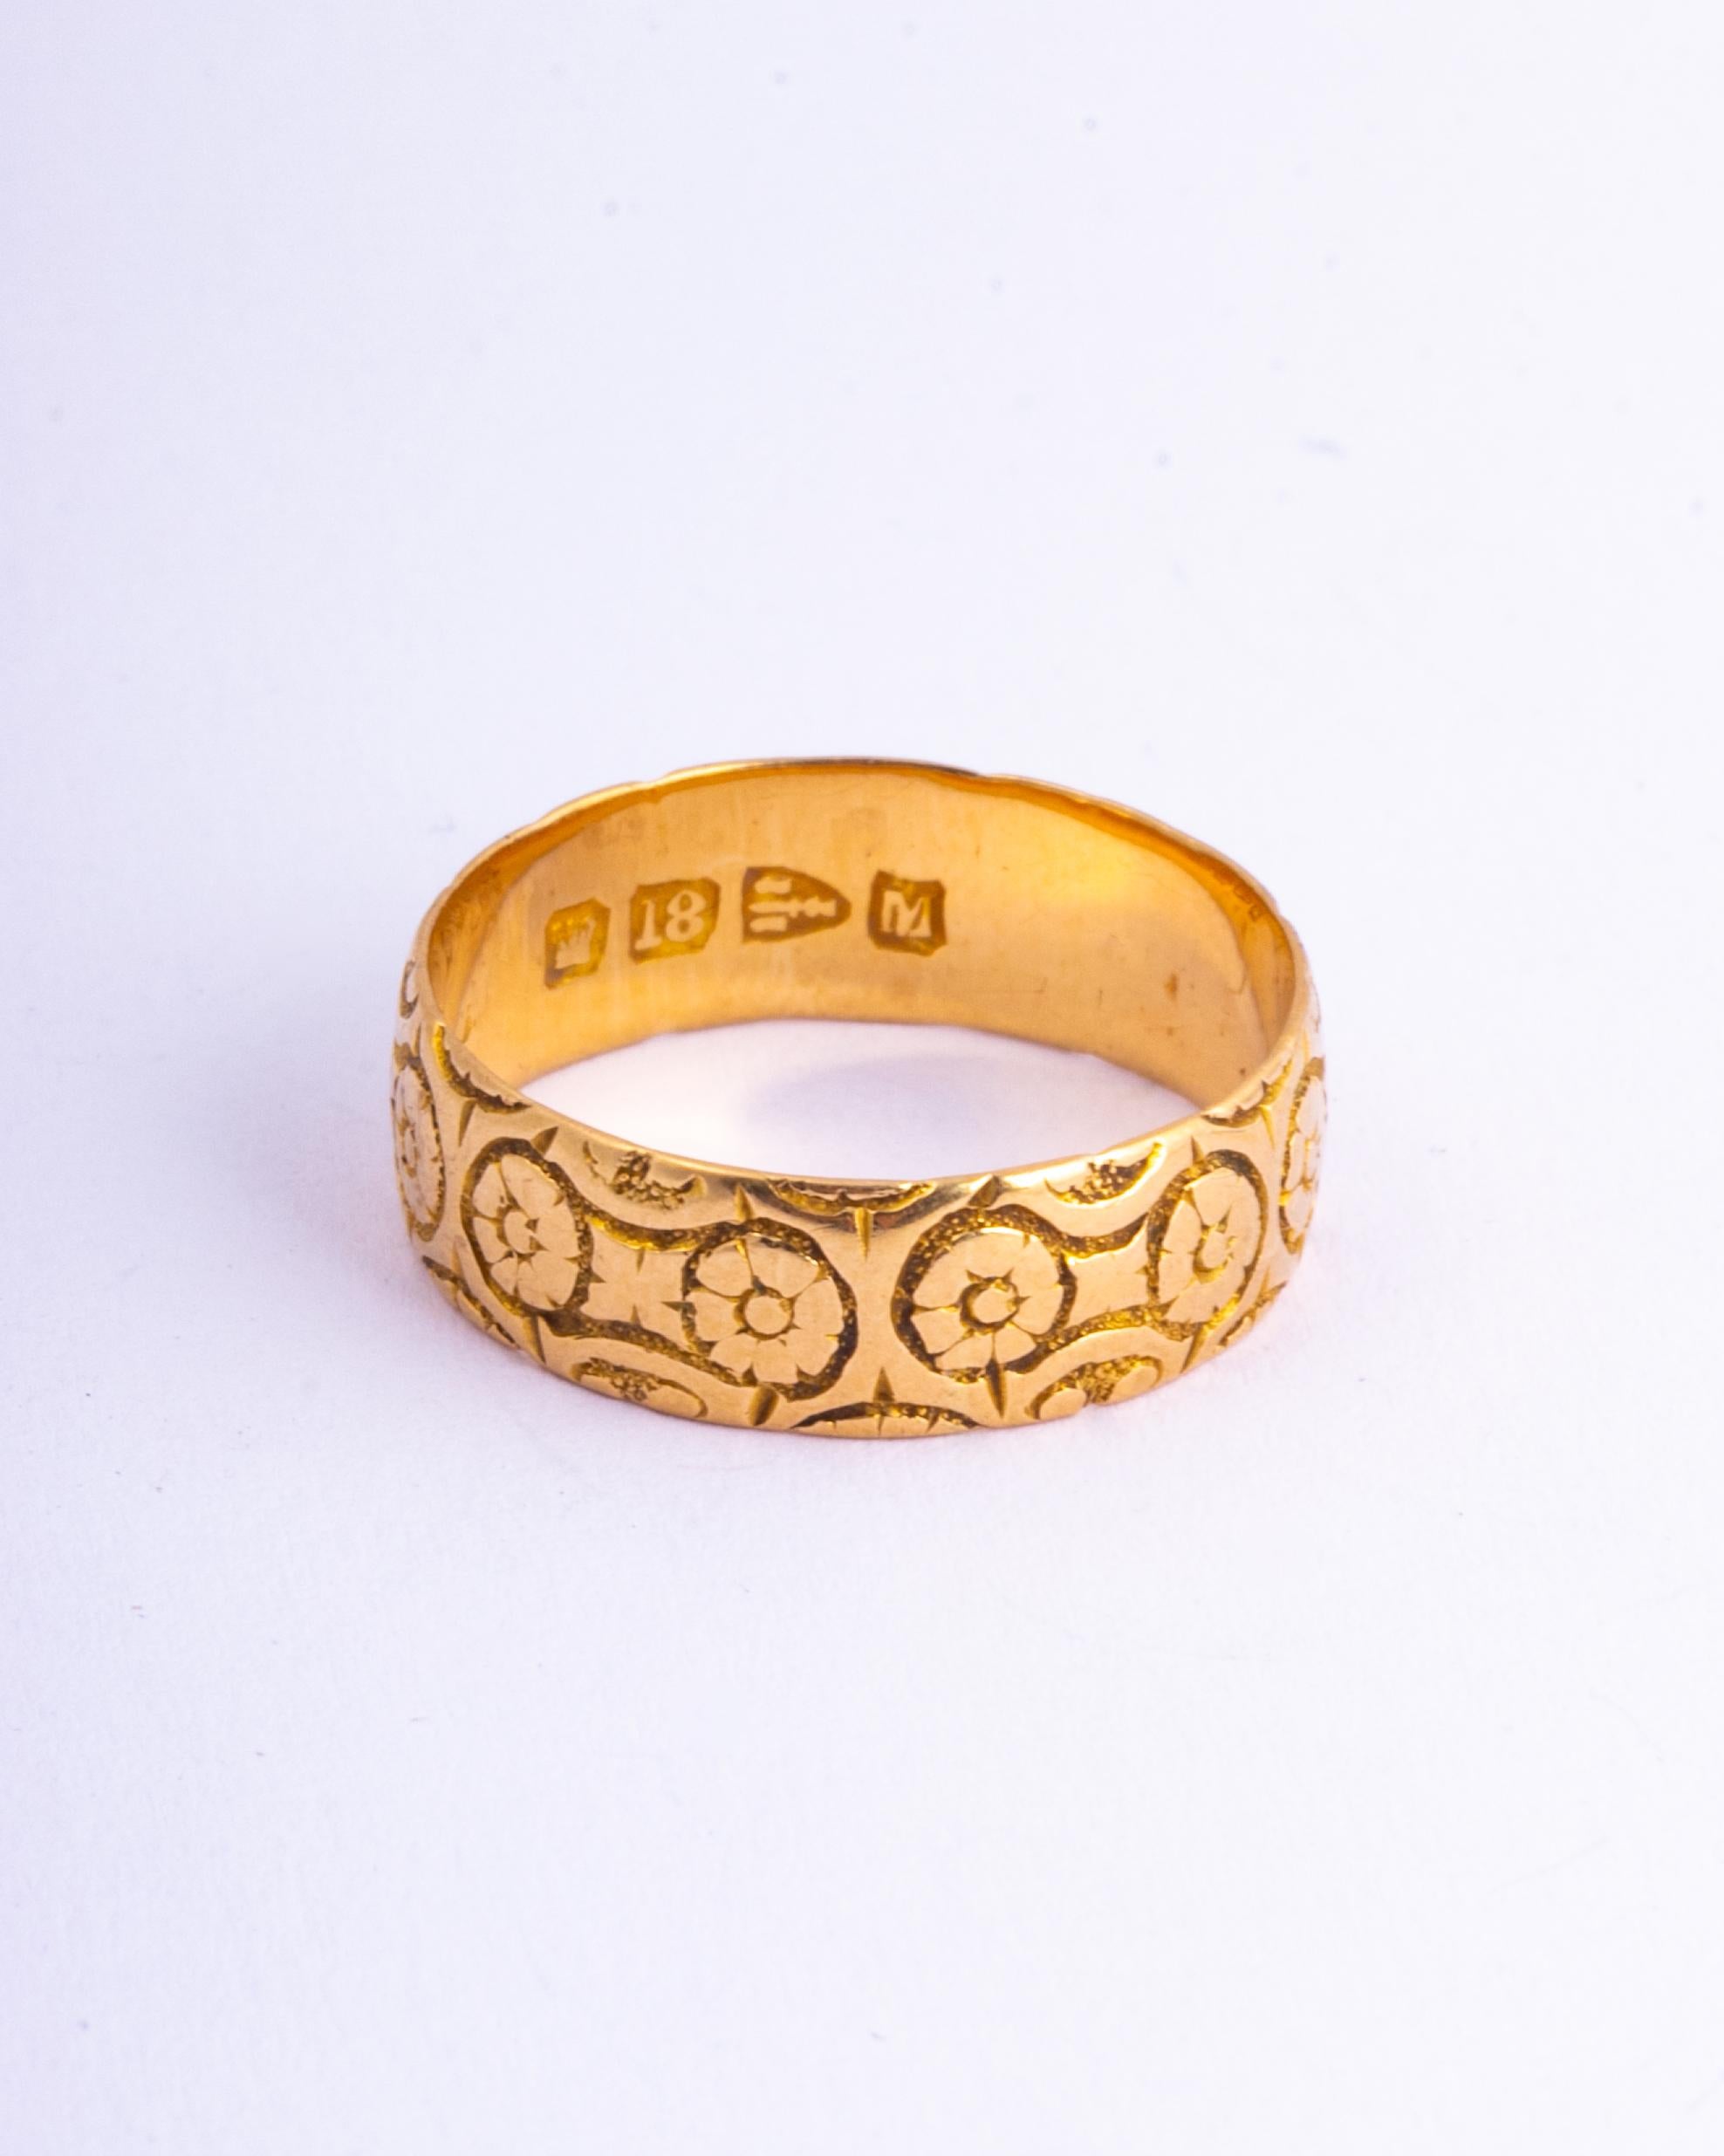 Dieses wunderschön dekorative Band aus 18-karätigem Gold besticht durch seine florale Gravur. Hergestellt in Chester, England. 

Ringgröße: N 1/4 oder 7
Bandbreite: 6mm

Gewicht: 3,55g